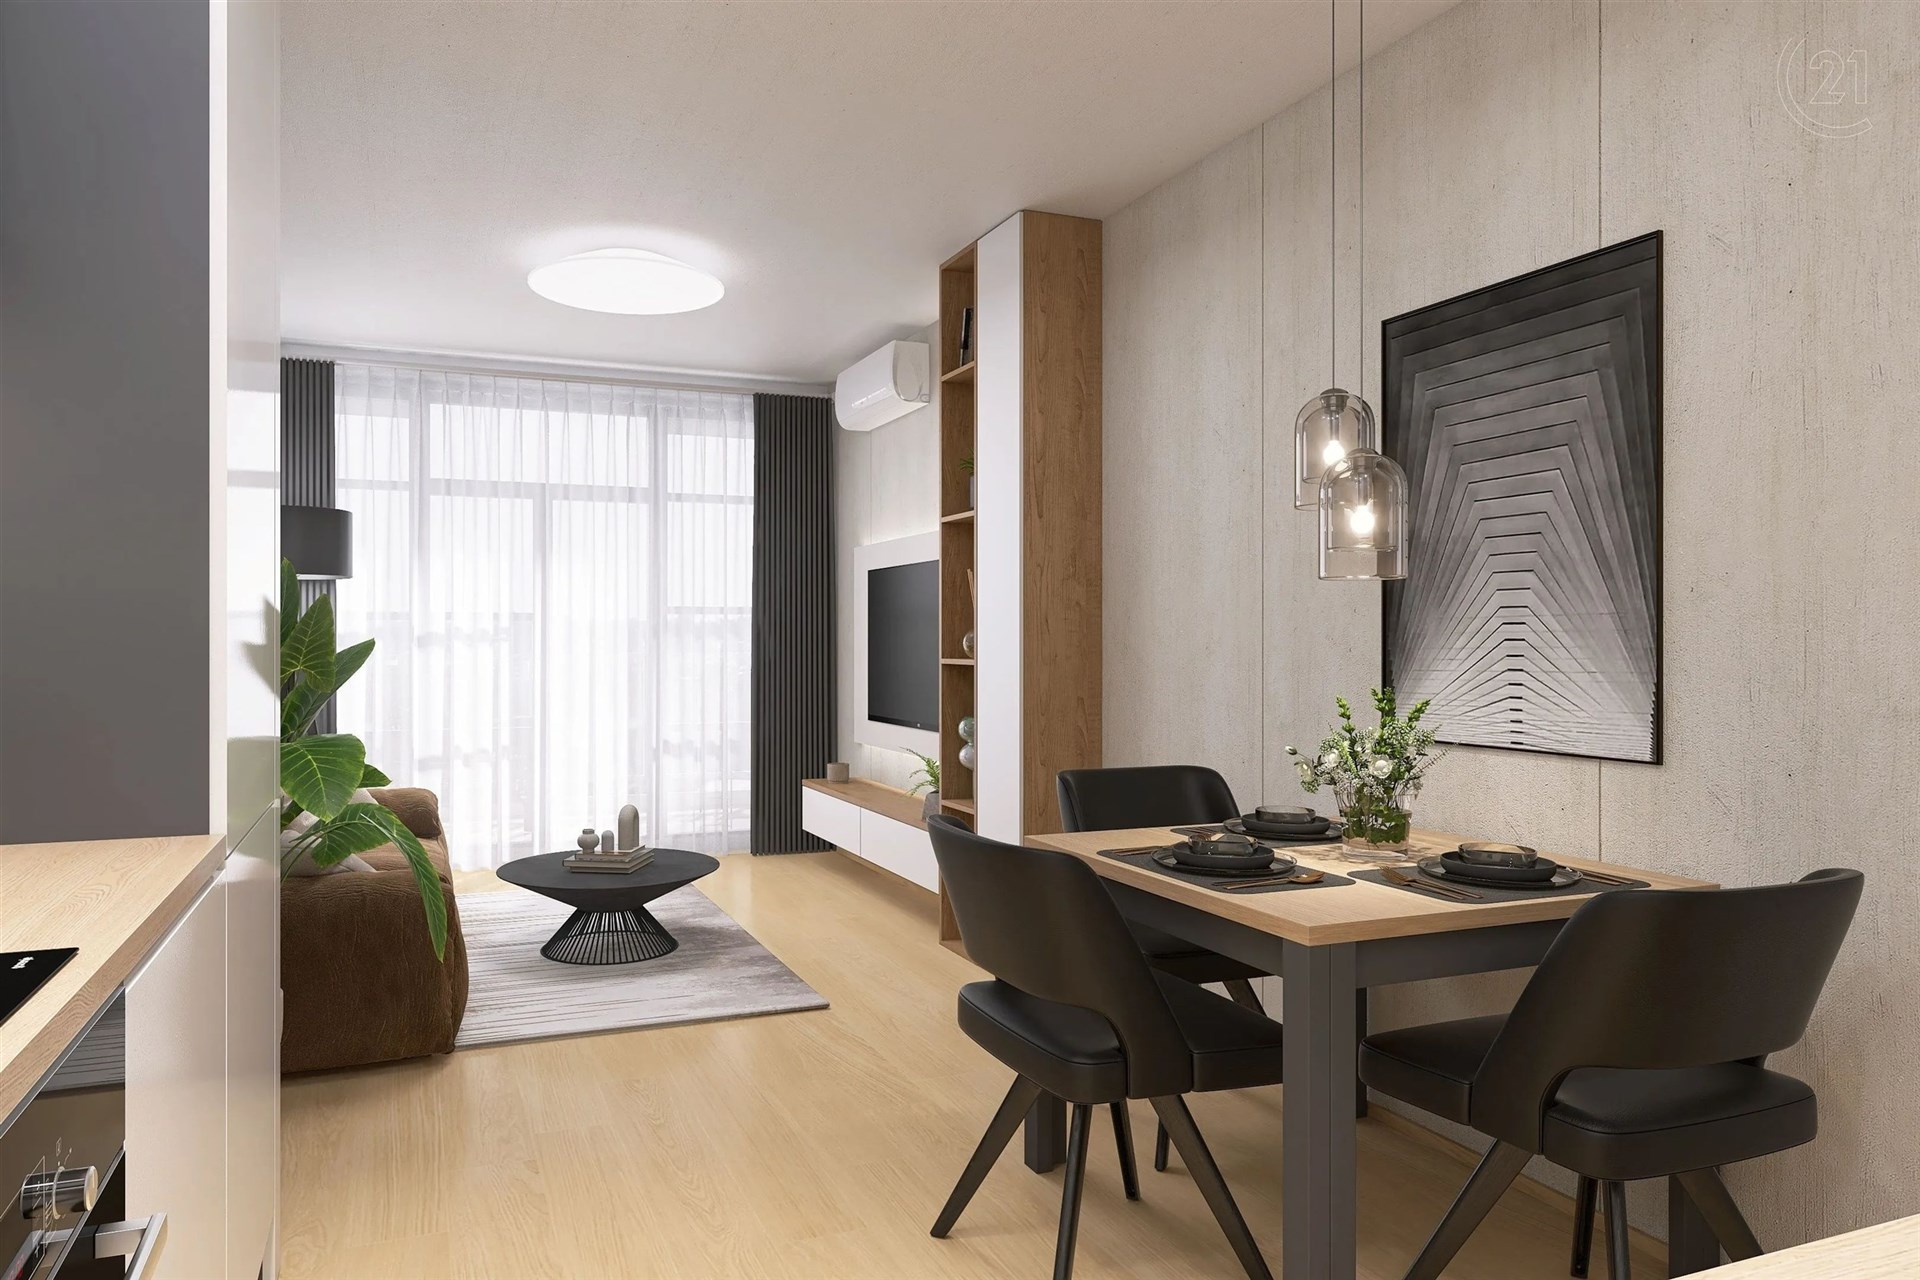 obývák-jídelna s okna stropní podlahy, nástěnná klimatizace, dřevěná podlaha, a přirozené světlo